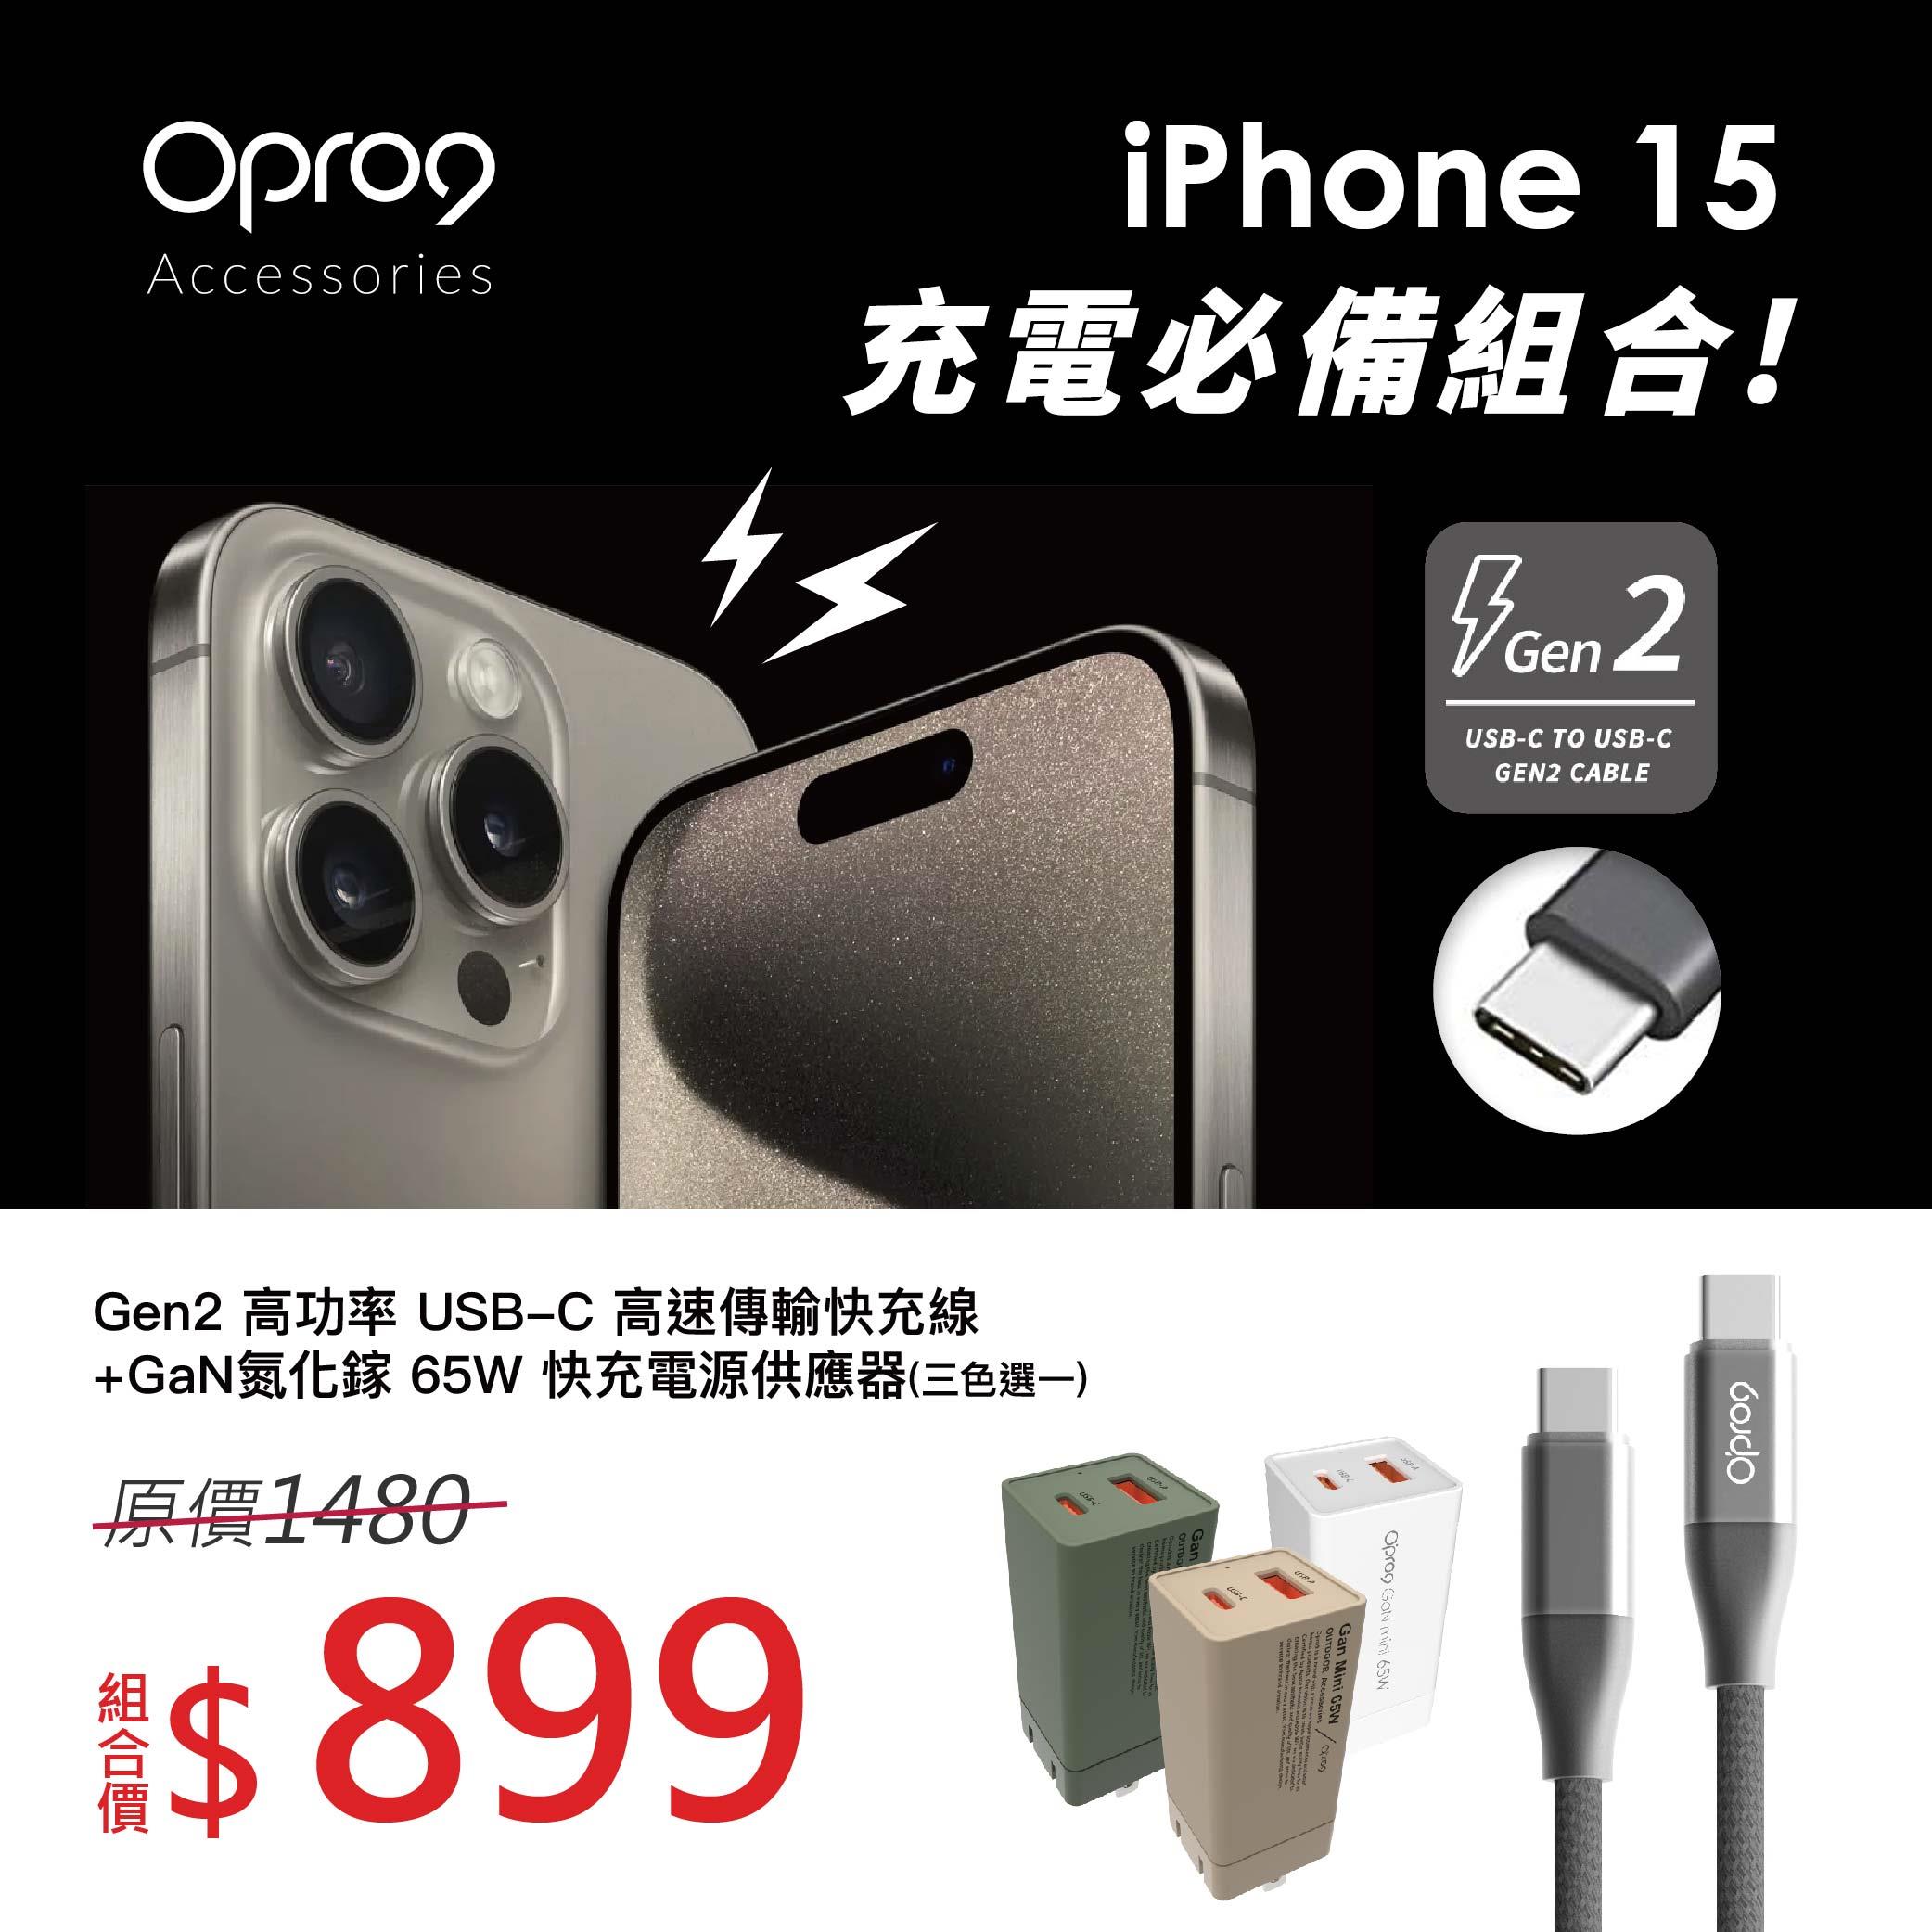 【iPhone15必備充電組】Opro9 GaN65W 充電器+ USB-C to USB-C 影音傳輸充電線